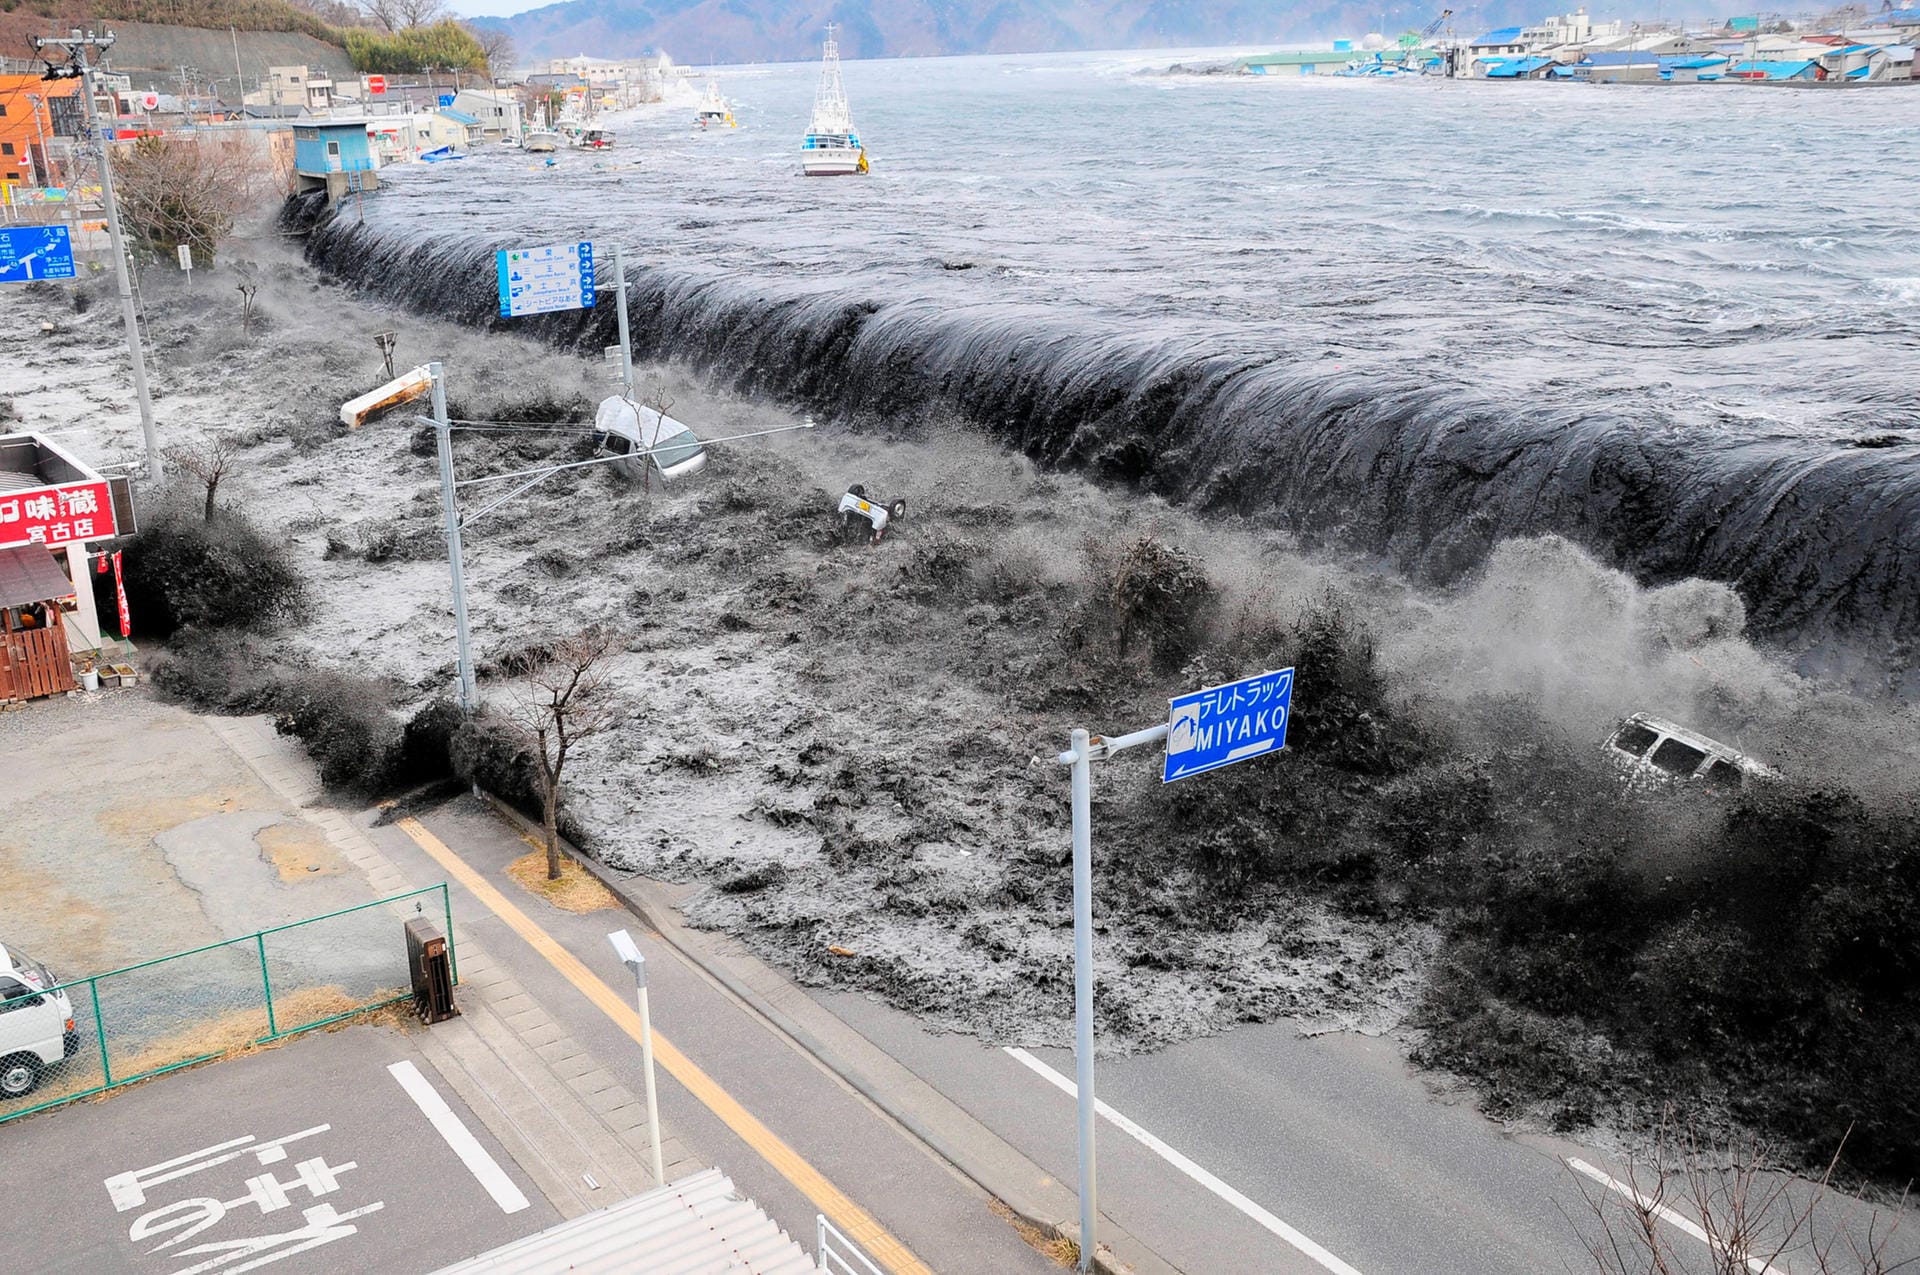 11. März 2011: Ein heftiges Erdbeben vor der Küste Japans löst einen Tsunami aus, der große Teile der Küstenabschnitte im Nordosten der Hauptinsel Honshu verwüstet. Rund 16.000 Menschen sterben. Im Kernkraftwerk Fukushima lösen die Erdstöße einen schweren Reaktorunfall aus. In der Folge steigt Deutschland aus der Atomkraft aus.